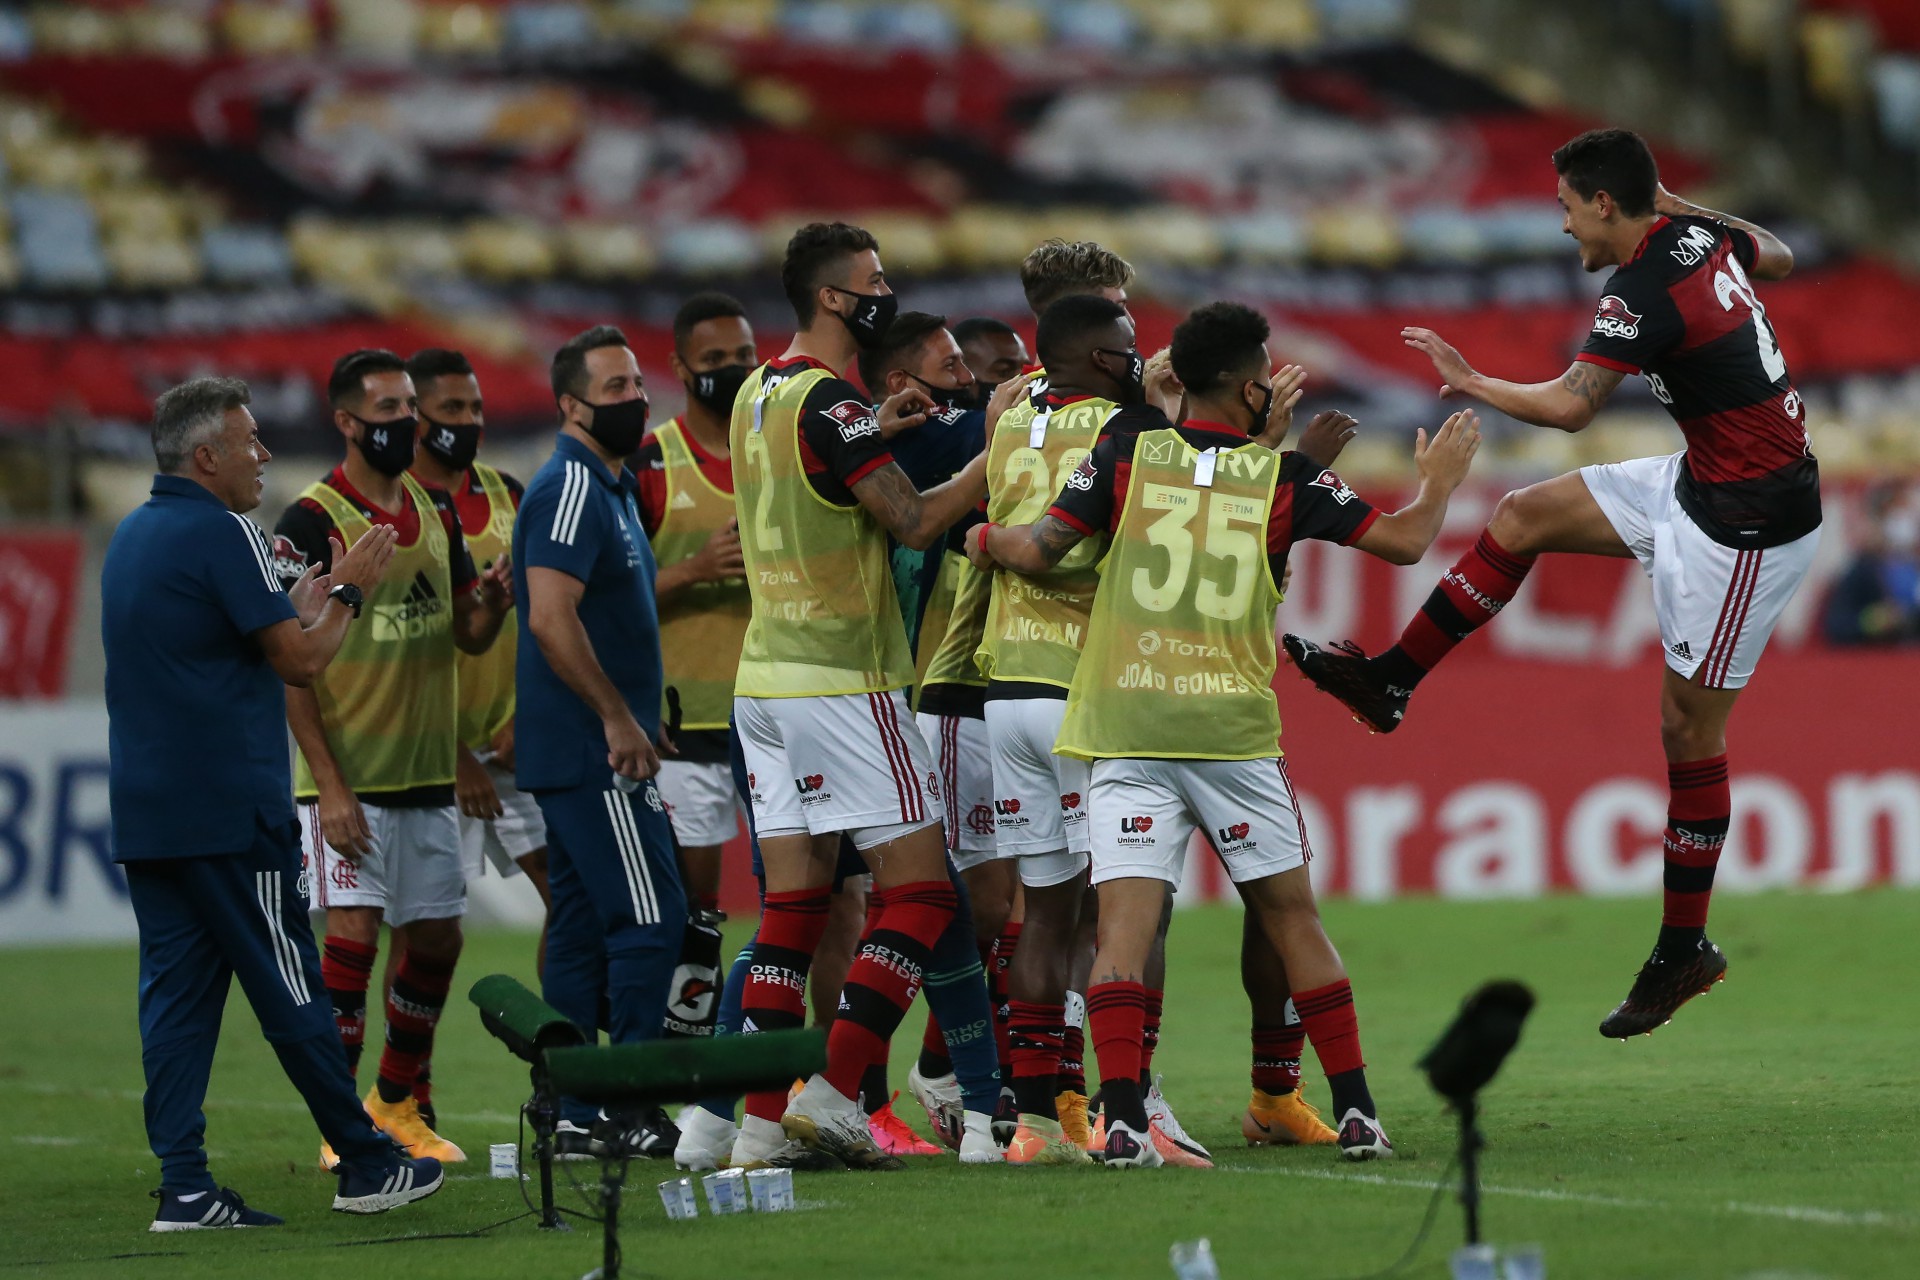 Flamengo x AthleticoPR jogo de volta pelas oitavas de final da Copa do Brasil no estádio do Maracanã. O atacante Pedro comemora o segundo gol dele no jogo. - Daniel Castelo Branco